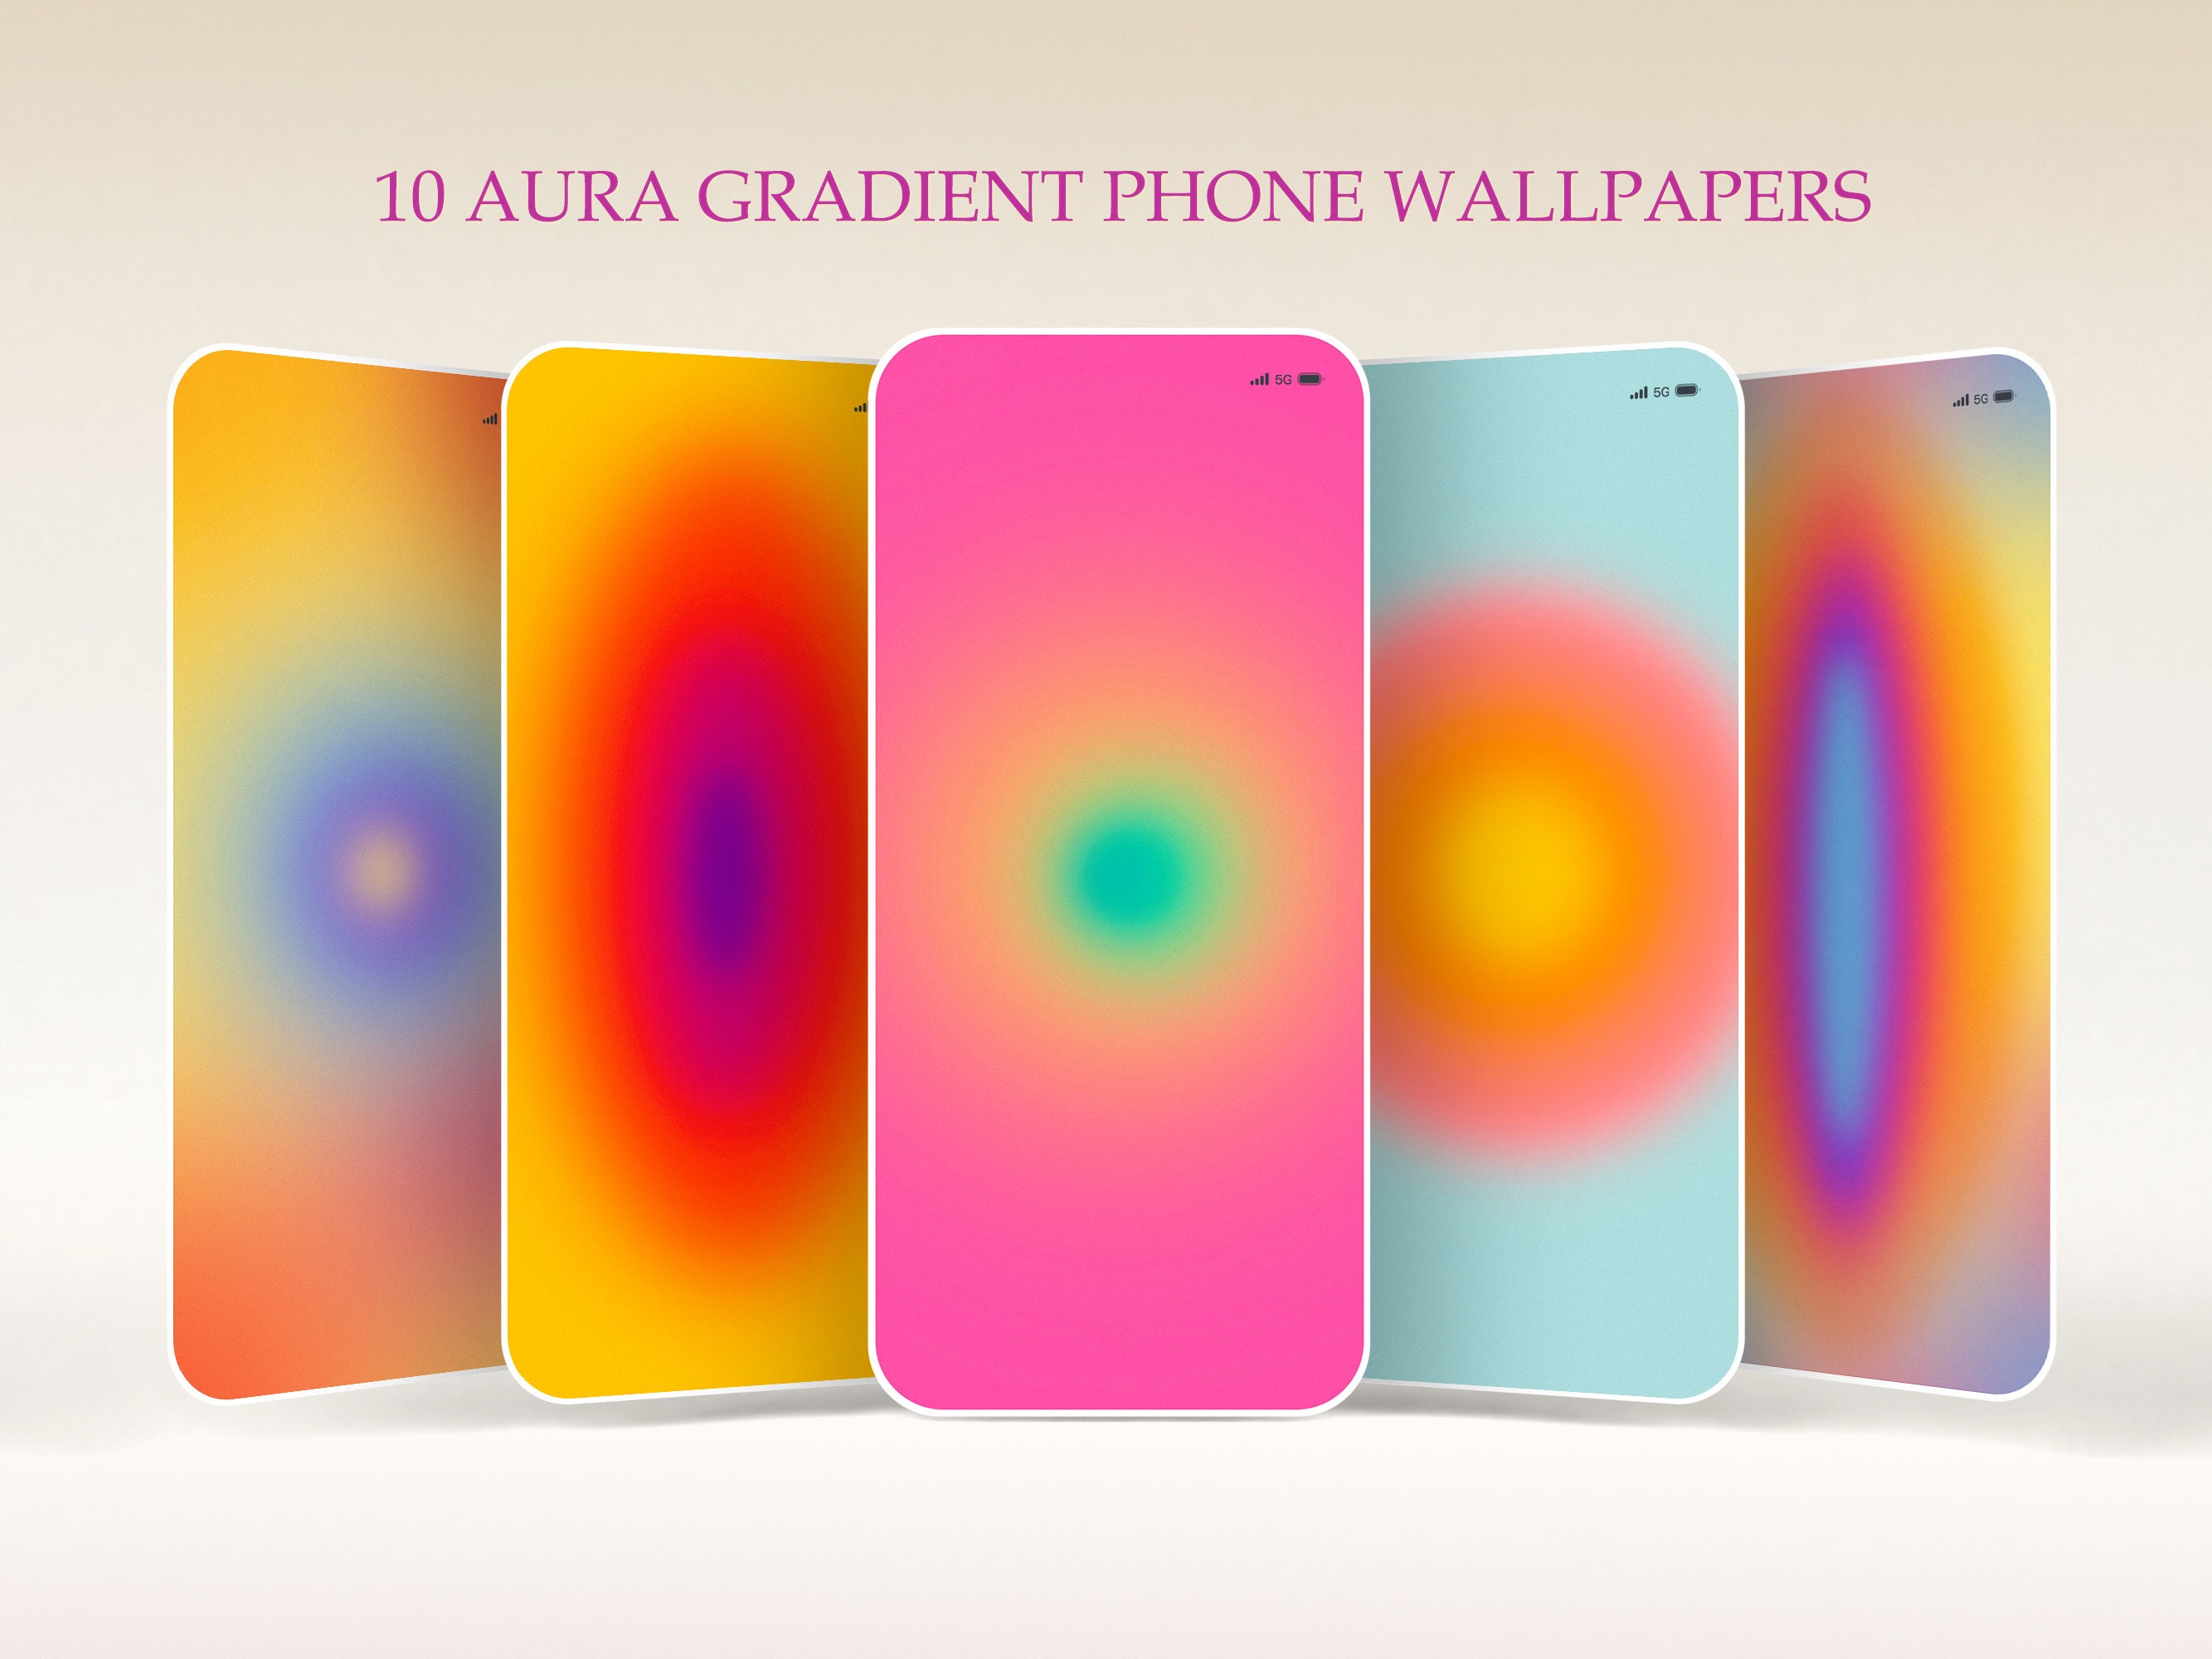 Khám phá trải nghiệm đầy màu sắc của bộ sưu tập hình nền Aura Gradient cho điện thoại iPhone và Android. Bộ sưu tập này không chỉ đẹp mắt và sắc nét, mà còn bao gồm rất nhiều hình nền độc đáo để bạn có thể thỏa sức lựa chọn. Tận hưởng trải nghiệm người dùng tuyệt vời với bộ sưu tập hình nền này.